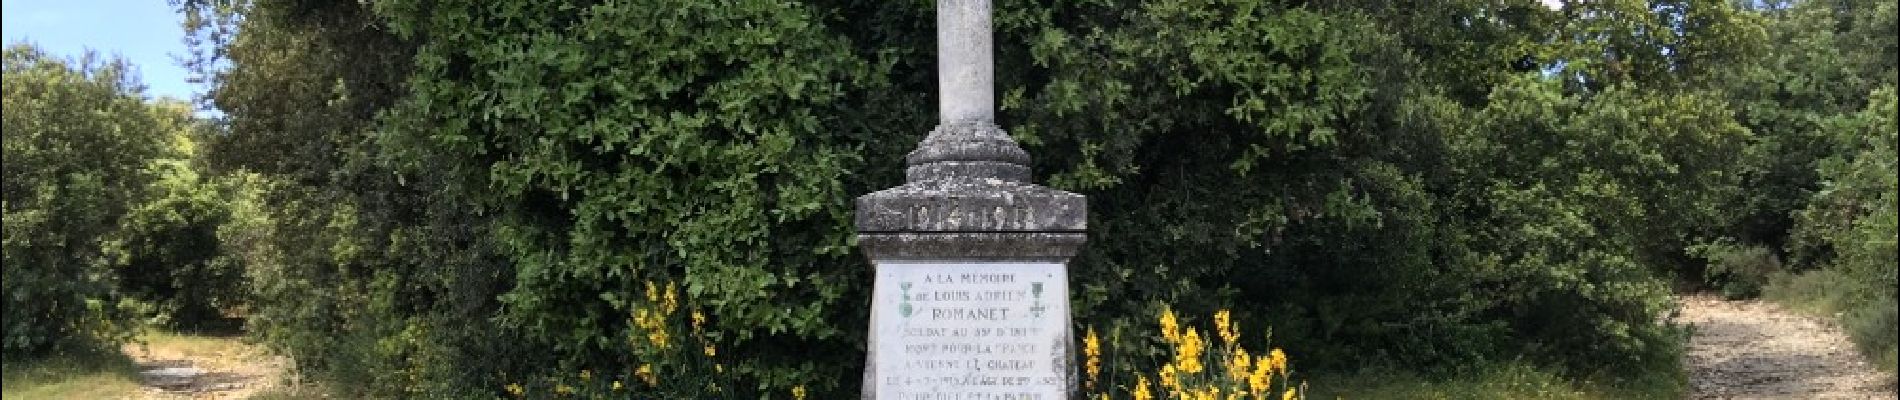 POI Bourg-Saint-Andéol - croix en souvenir du soldat Louis Adrien Romanet - Photo